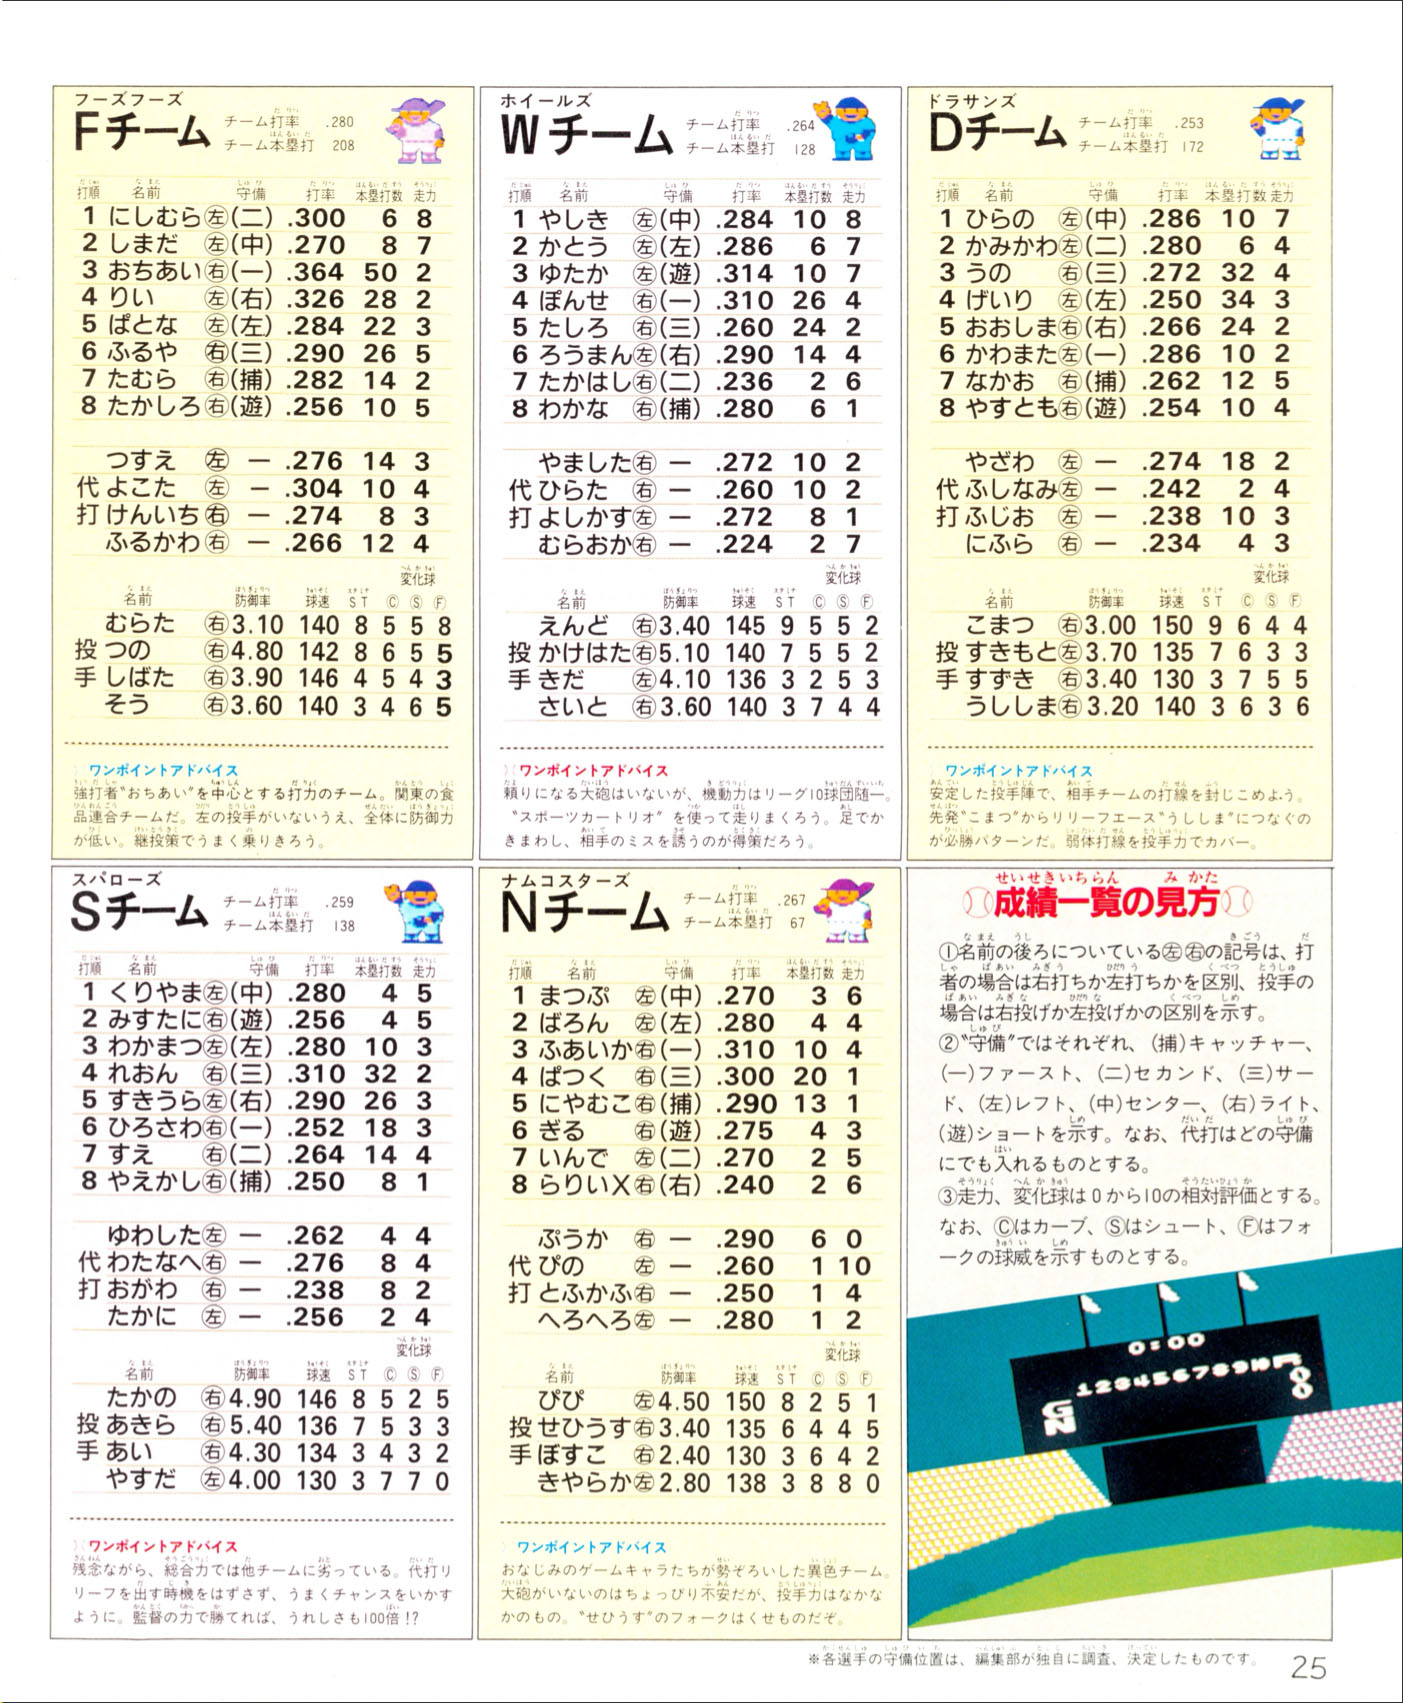 Pro Yakyuu: Family Stadium, Famitsu December 12, 1986 page 25